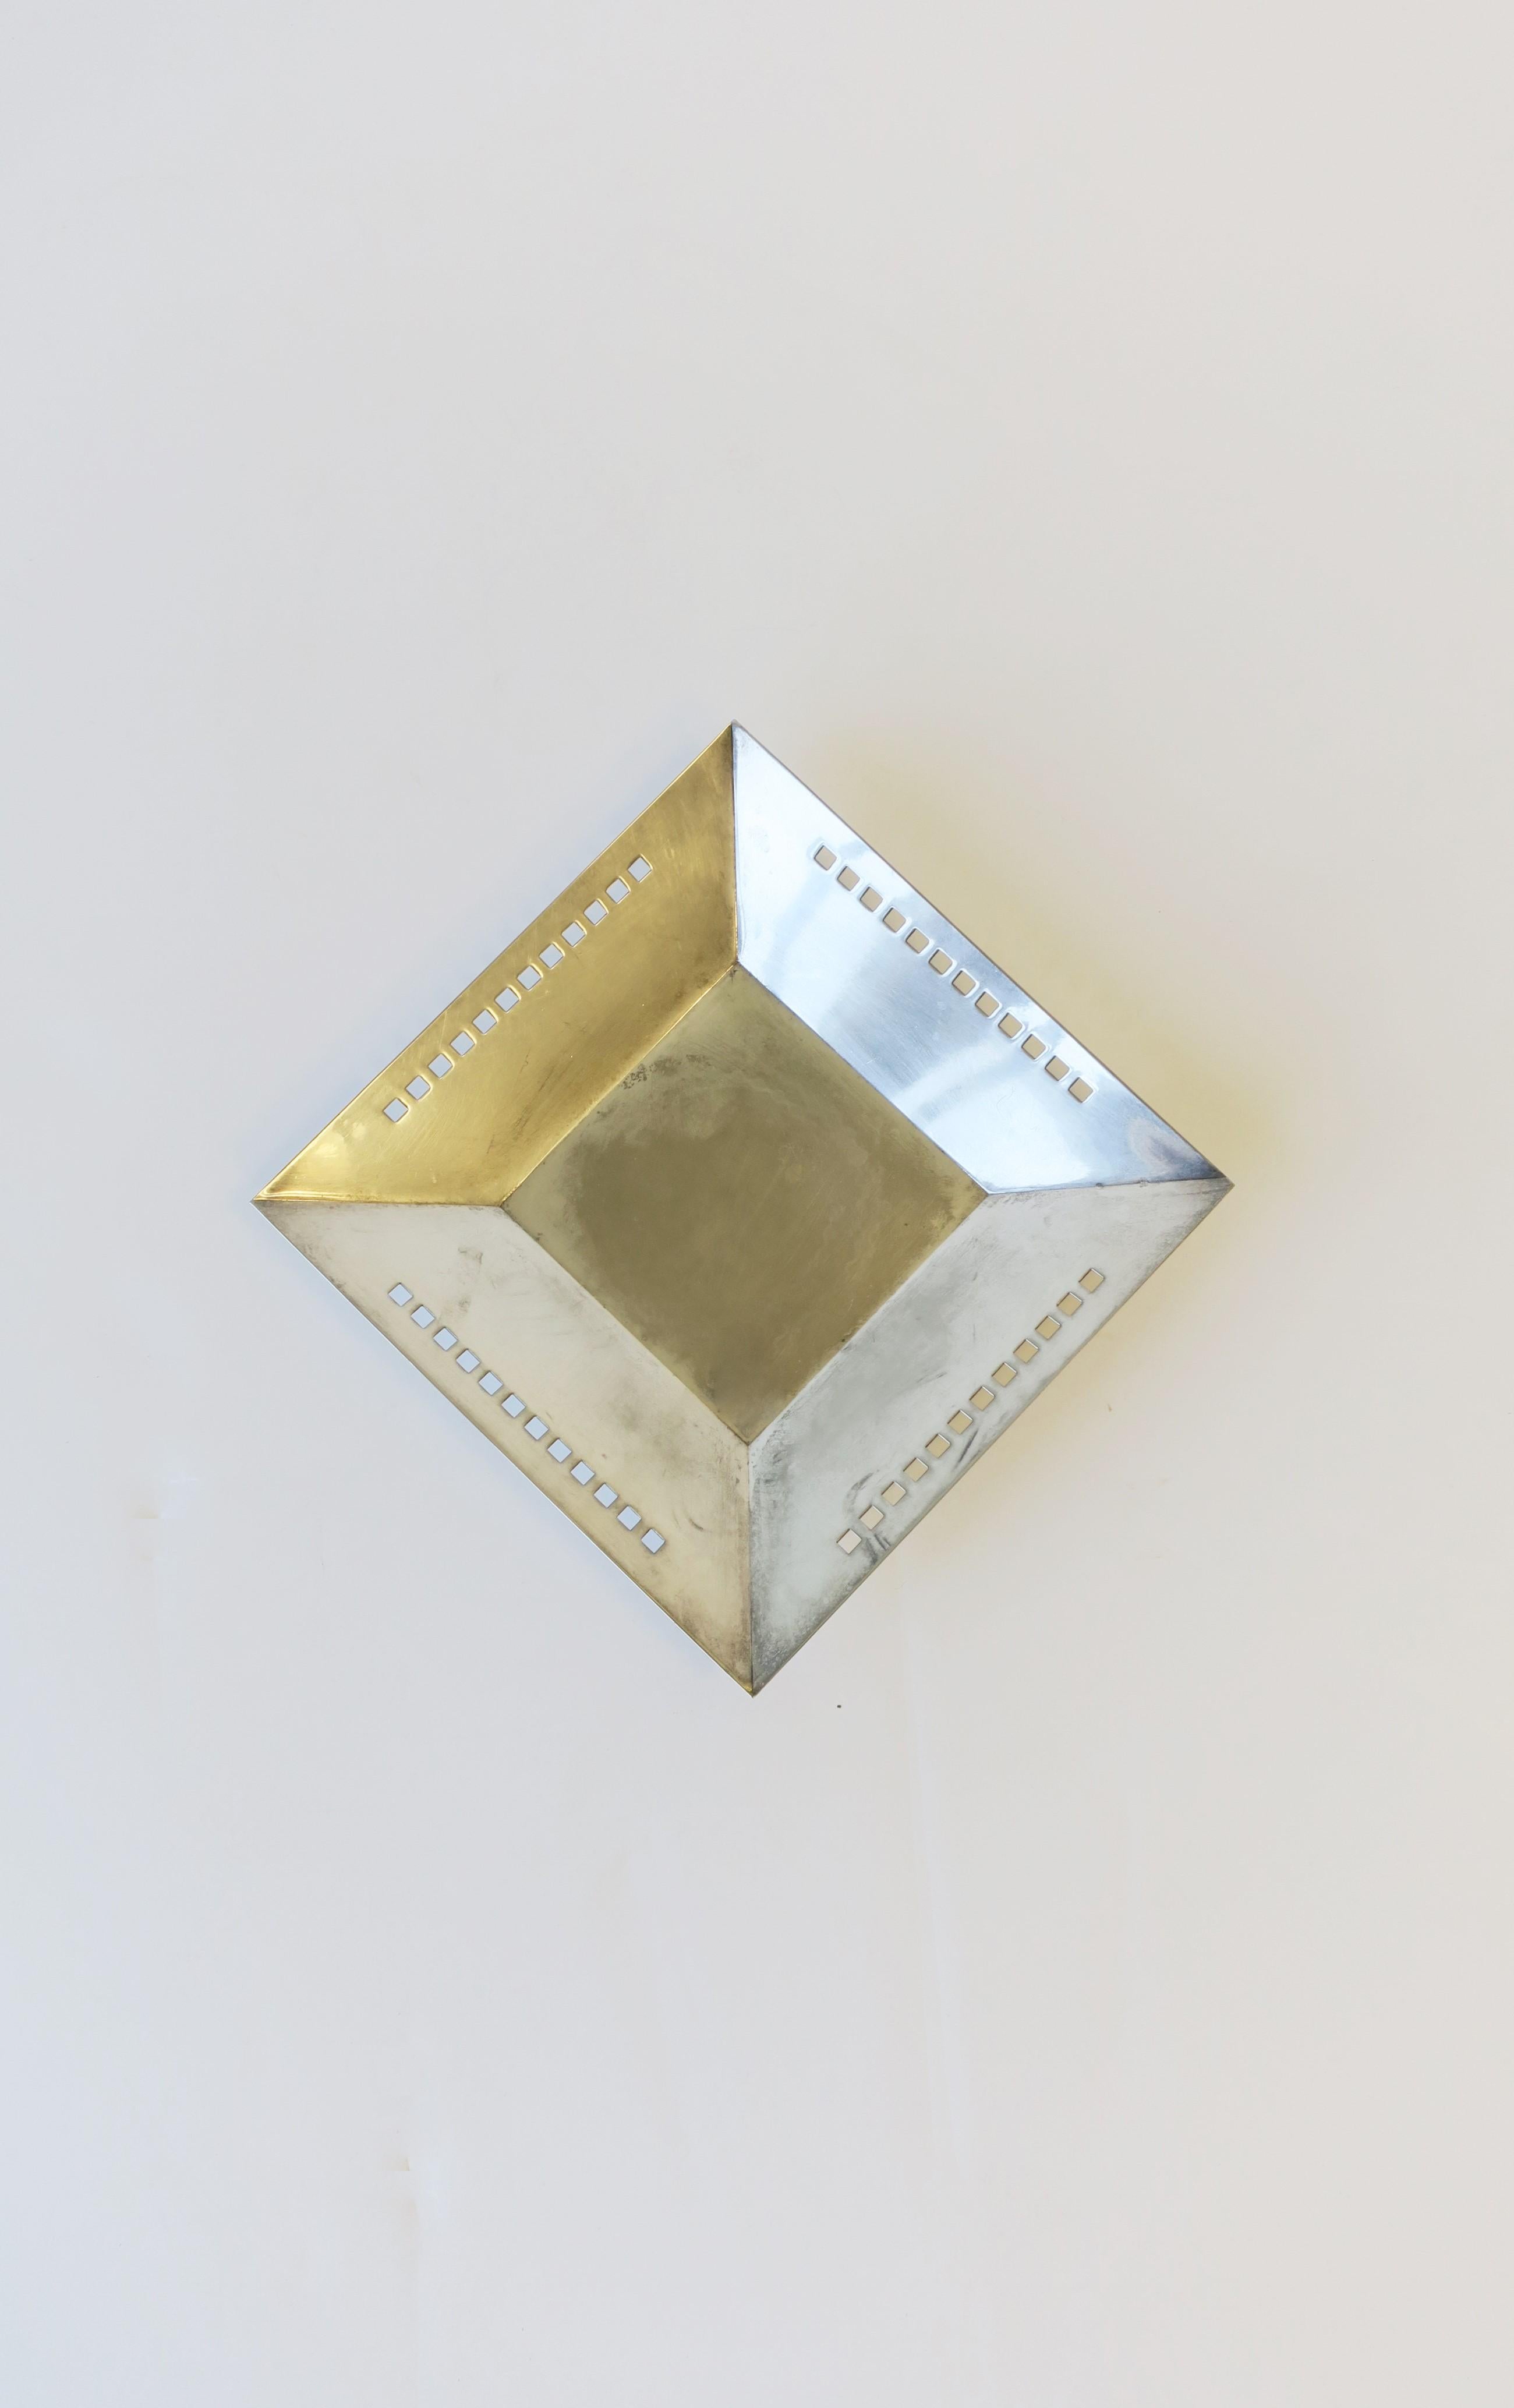 Post-Modern 1990s Designer Postmodern Silver Dish by Richard Meier for Swid Powell